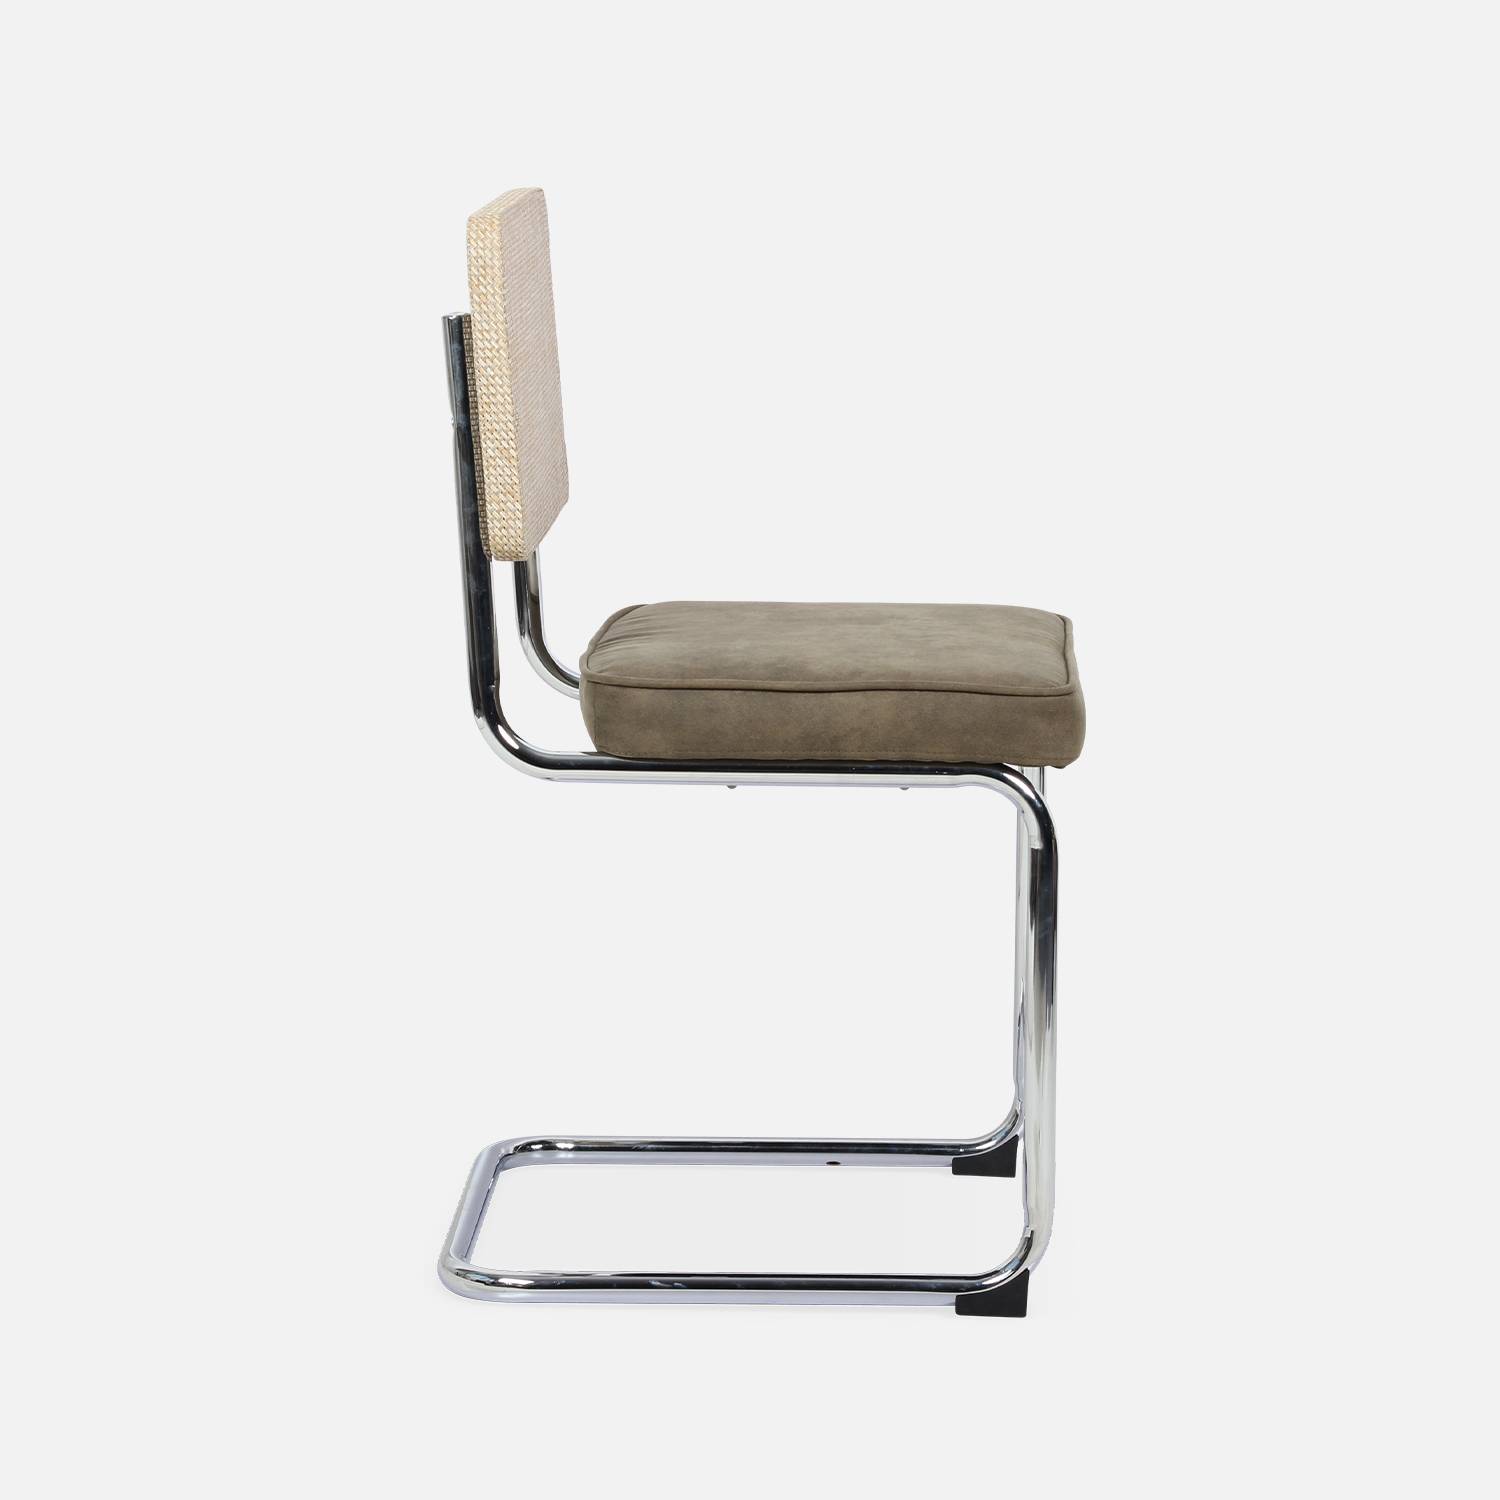 2 cadeiras cantilever - Maja - tecido caqui e resina com efeito rattan, 46 x 54,5 x 84,5 cm Photo6